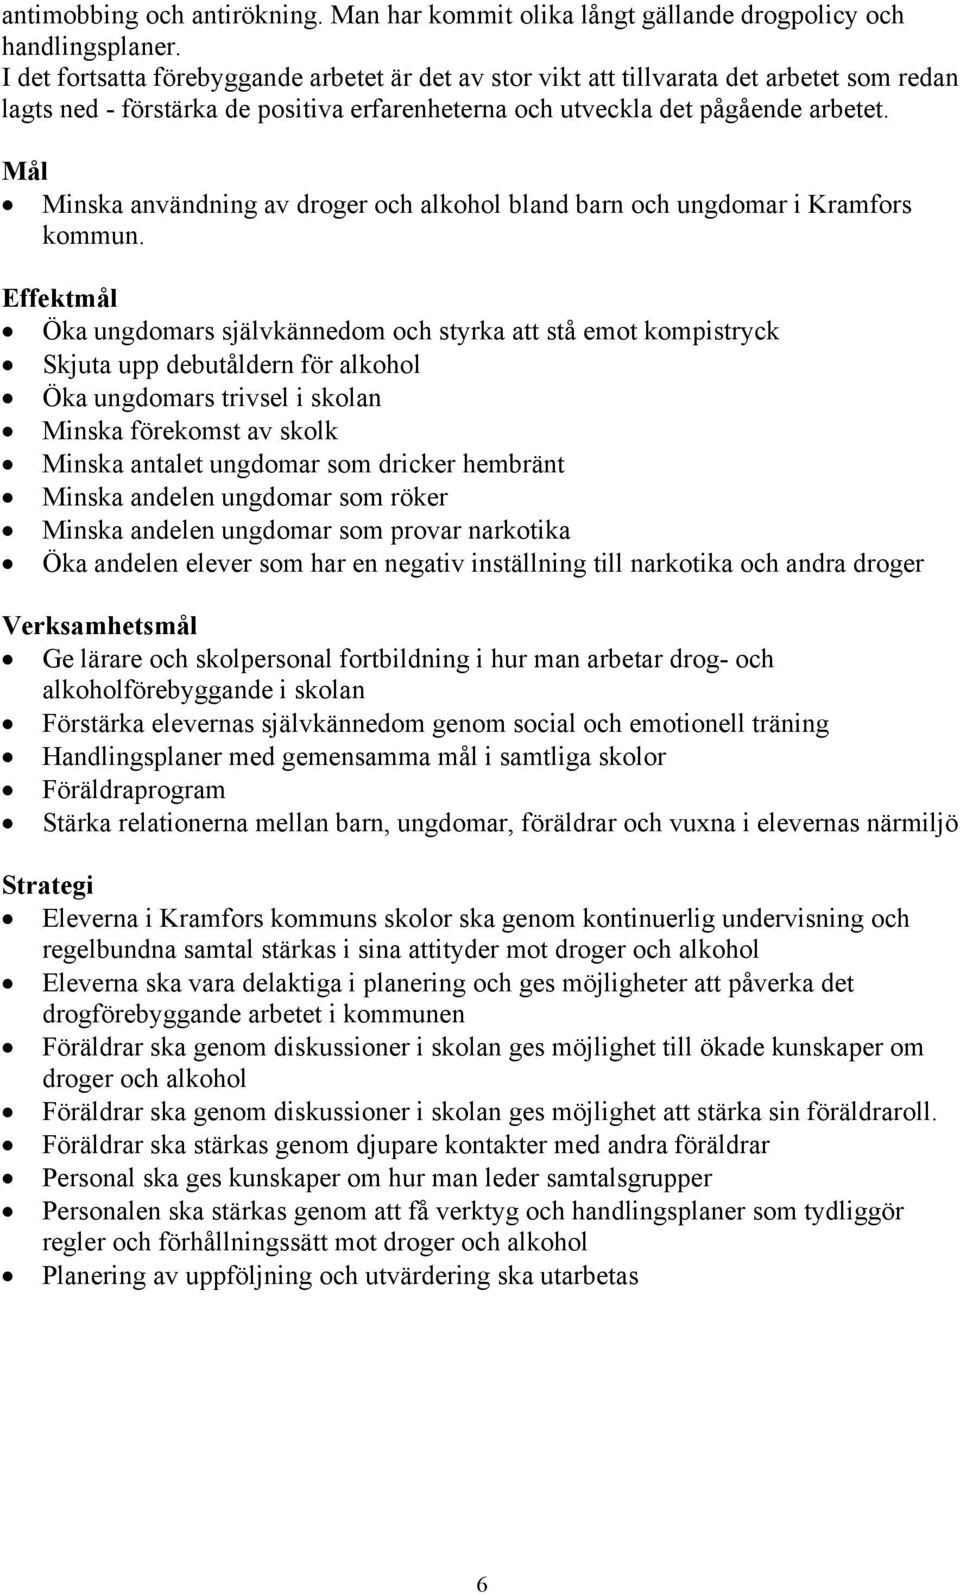 Mål Minska användning av droger och alkohol bland barn och ungdomar i Kramfors kommun.